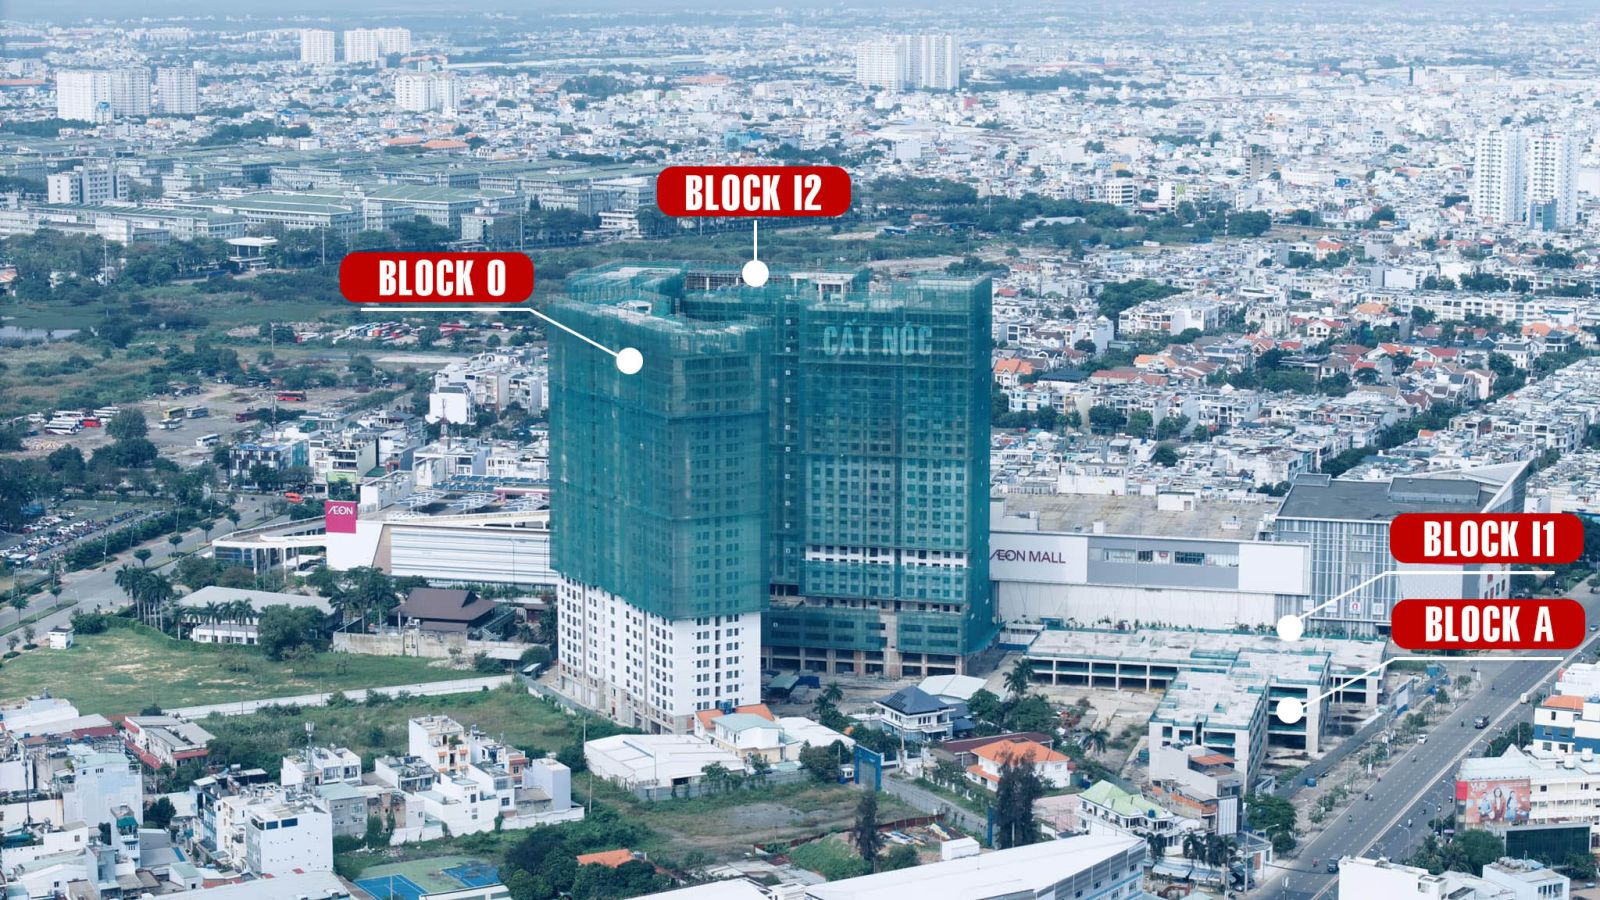 tiến độ xây dựng căn hộ aio city binh tân cao 28 tầng với 2060 căn hộ và 69 căn shophoues